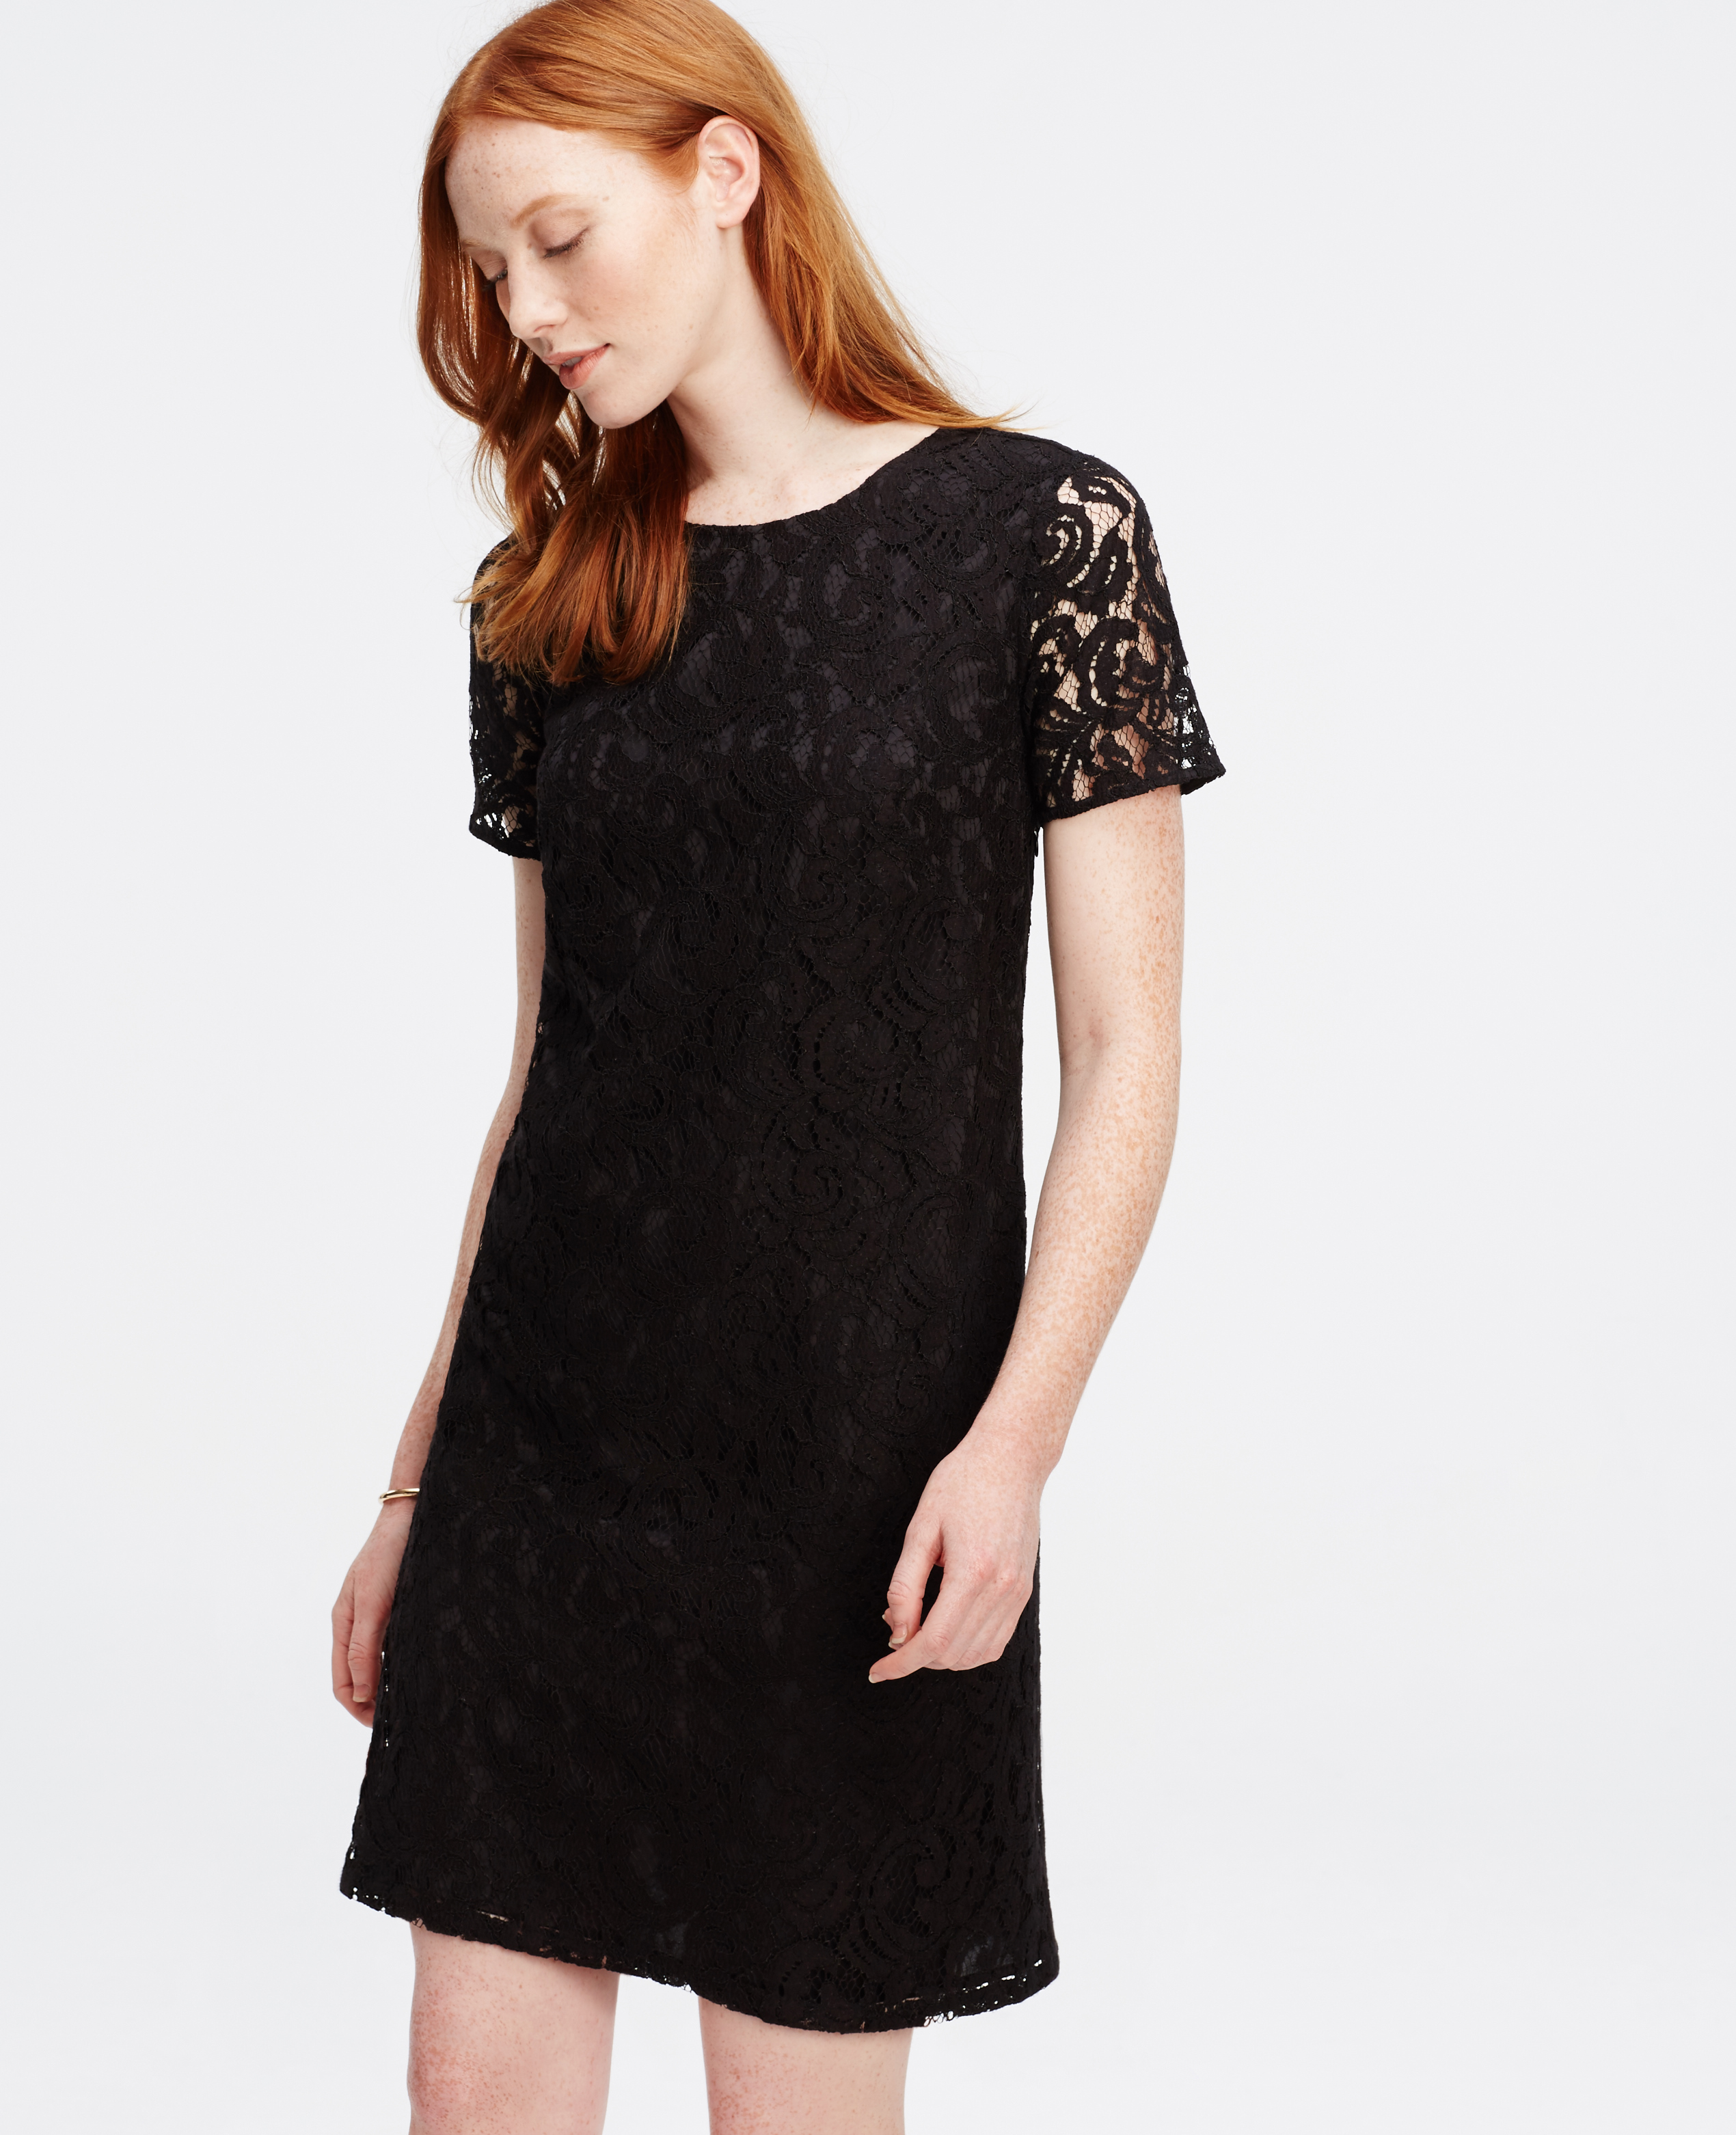 ann taylor black lace dress